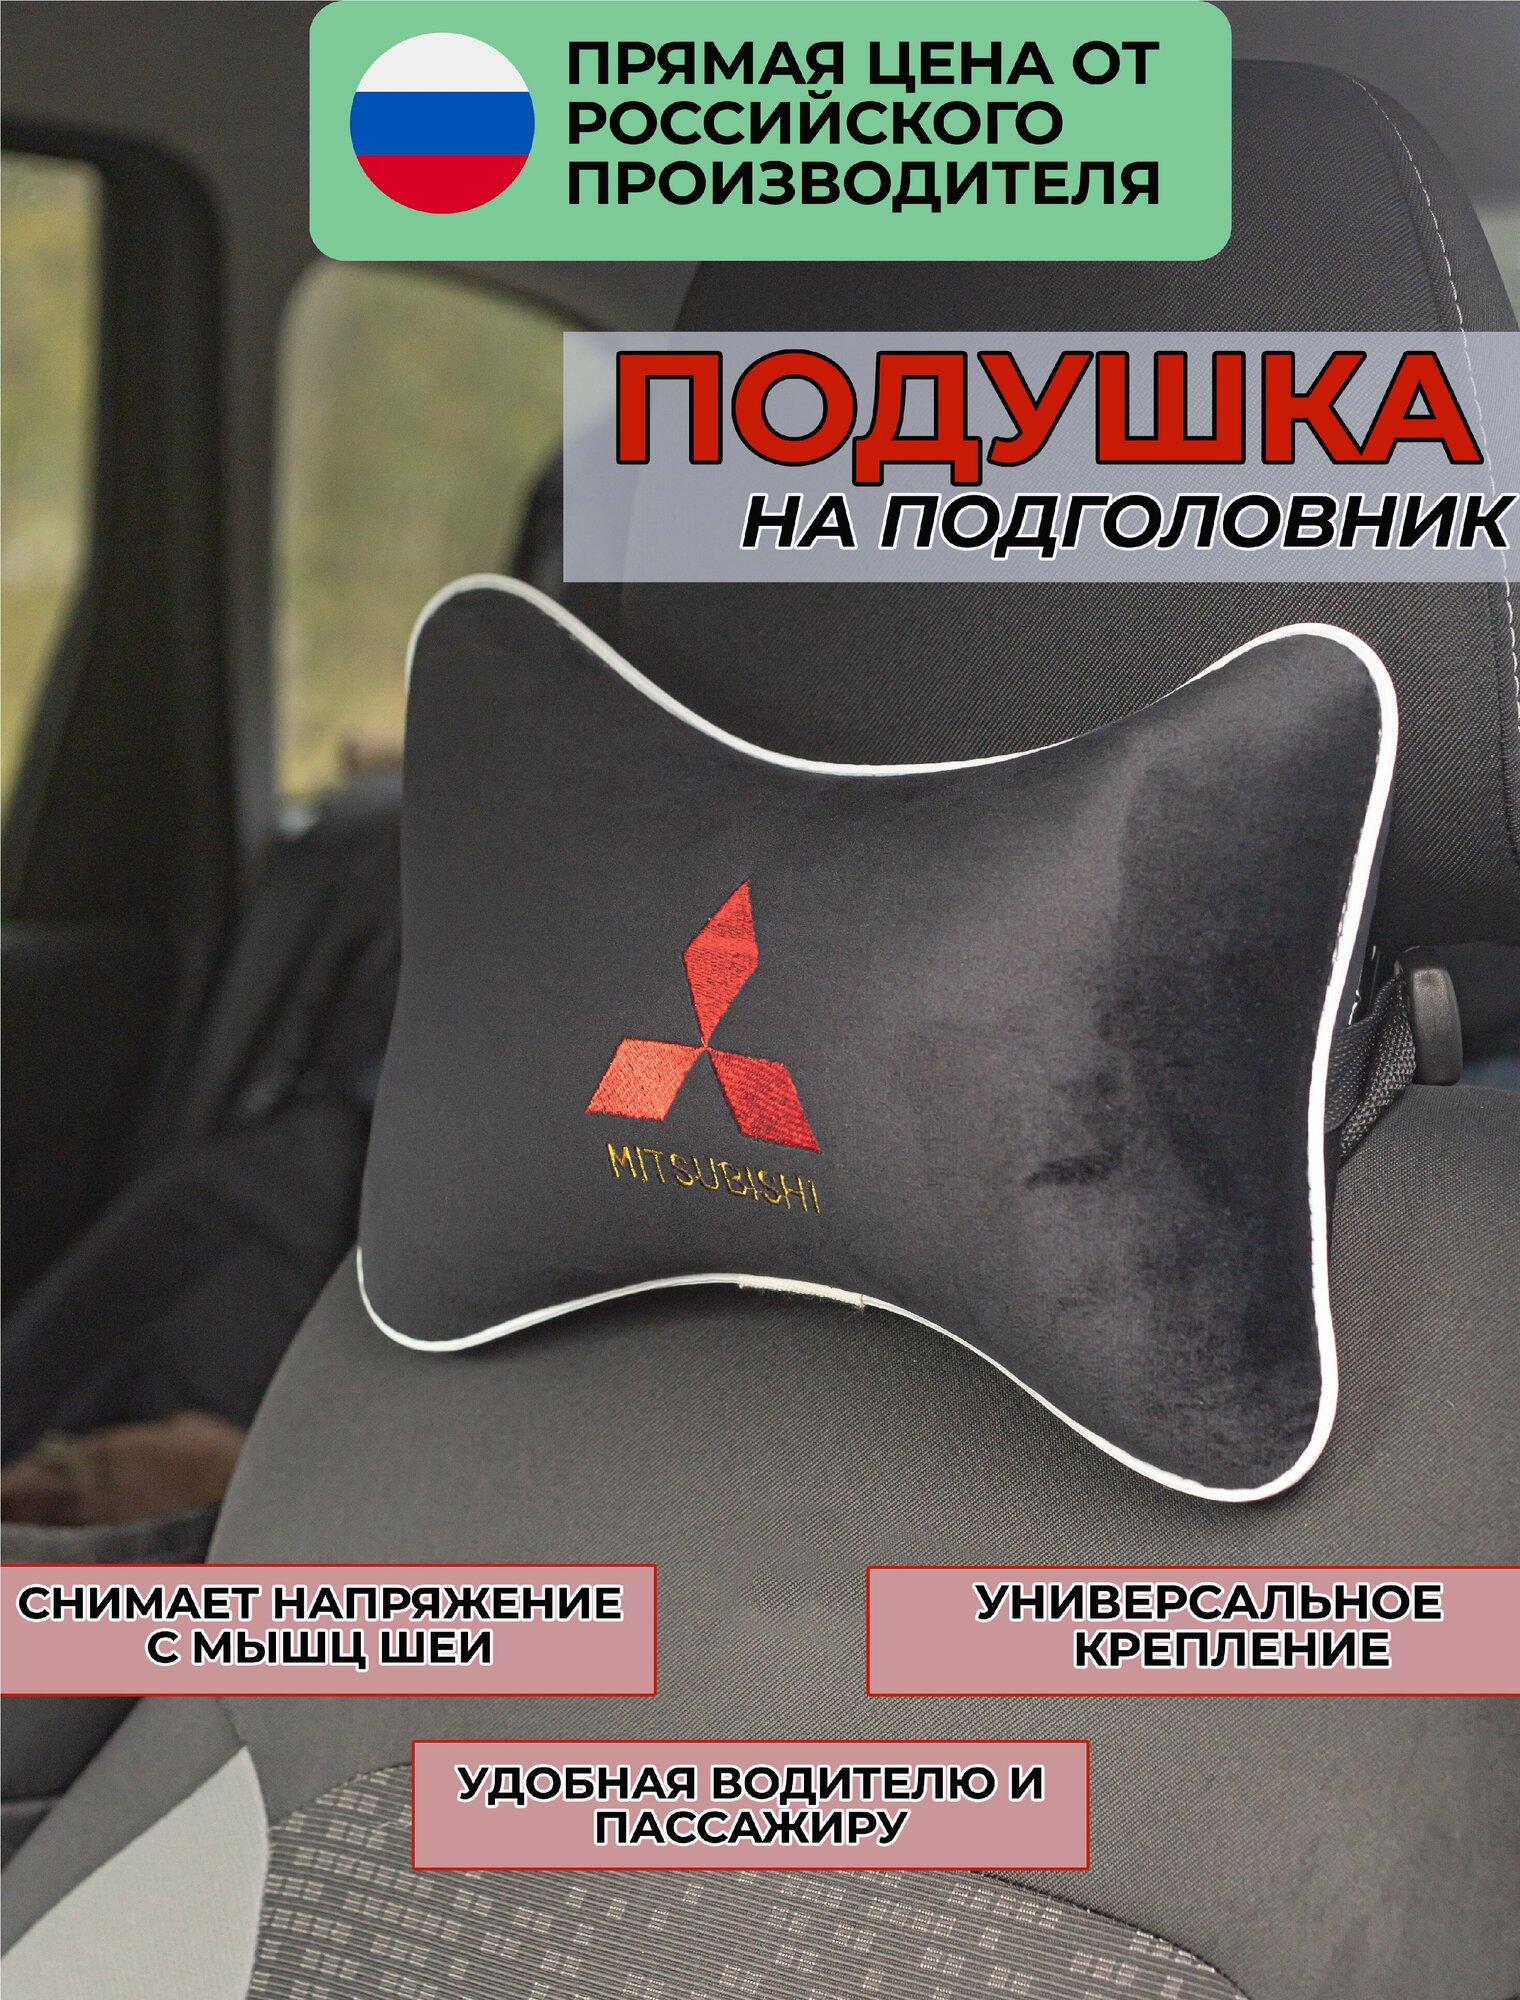 Подушка на подголовник в салон автомобиля из велюра с логотипом ((митсубиси) 